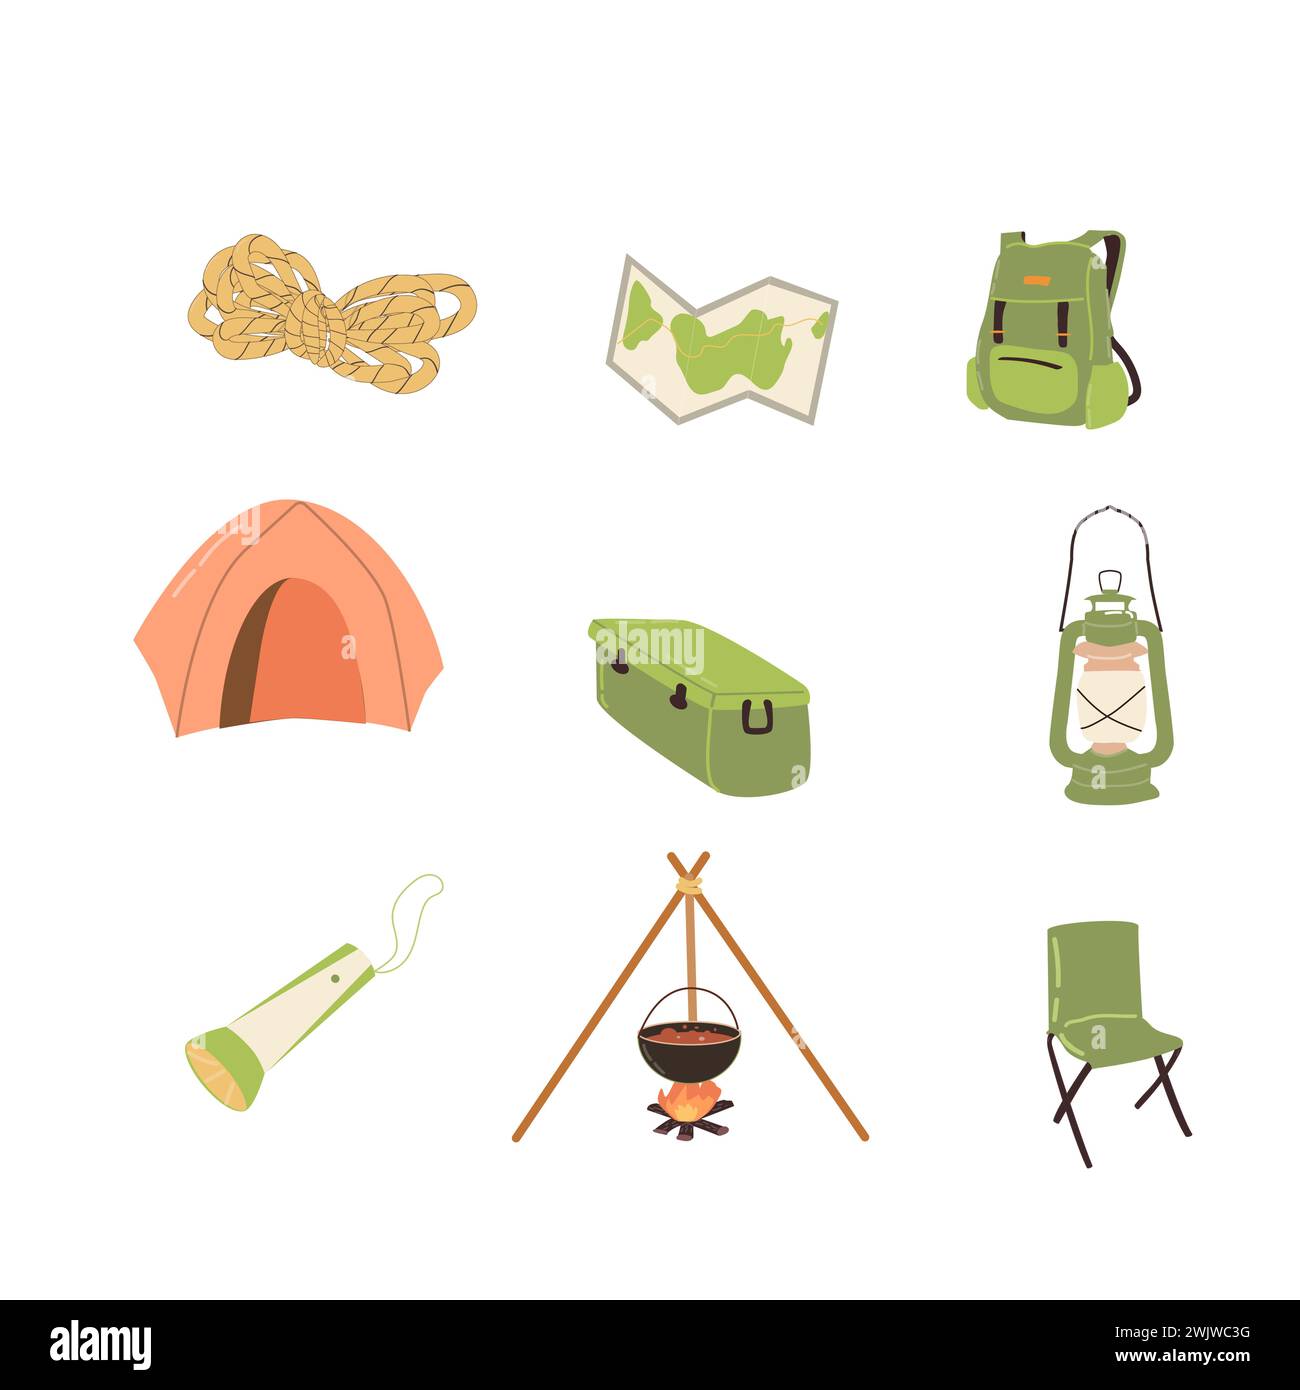 Handgezeichnetes Set von Campingausrüstung. Vektor-Illustration kann für Camp Banner, Grußkarte, Aufkleber verwendet werden. Stock Vektor